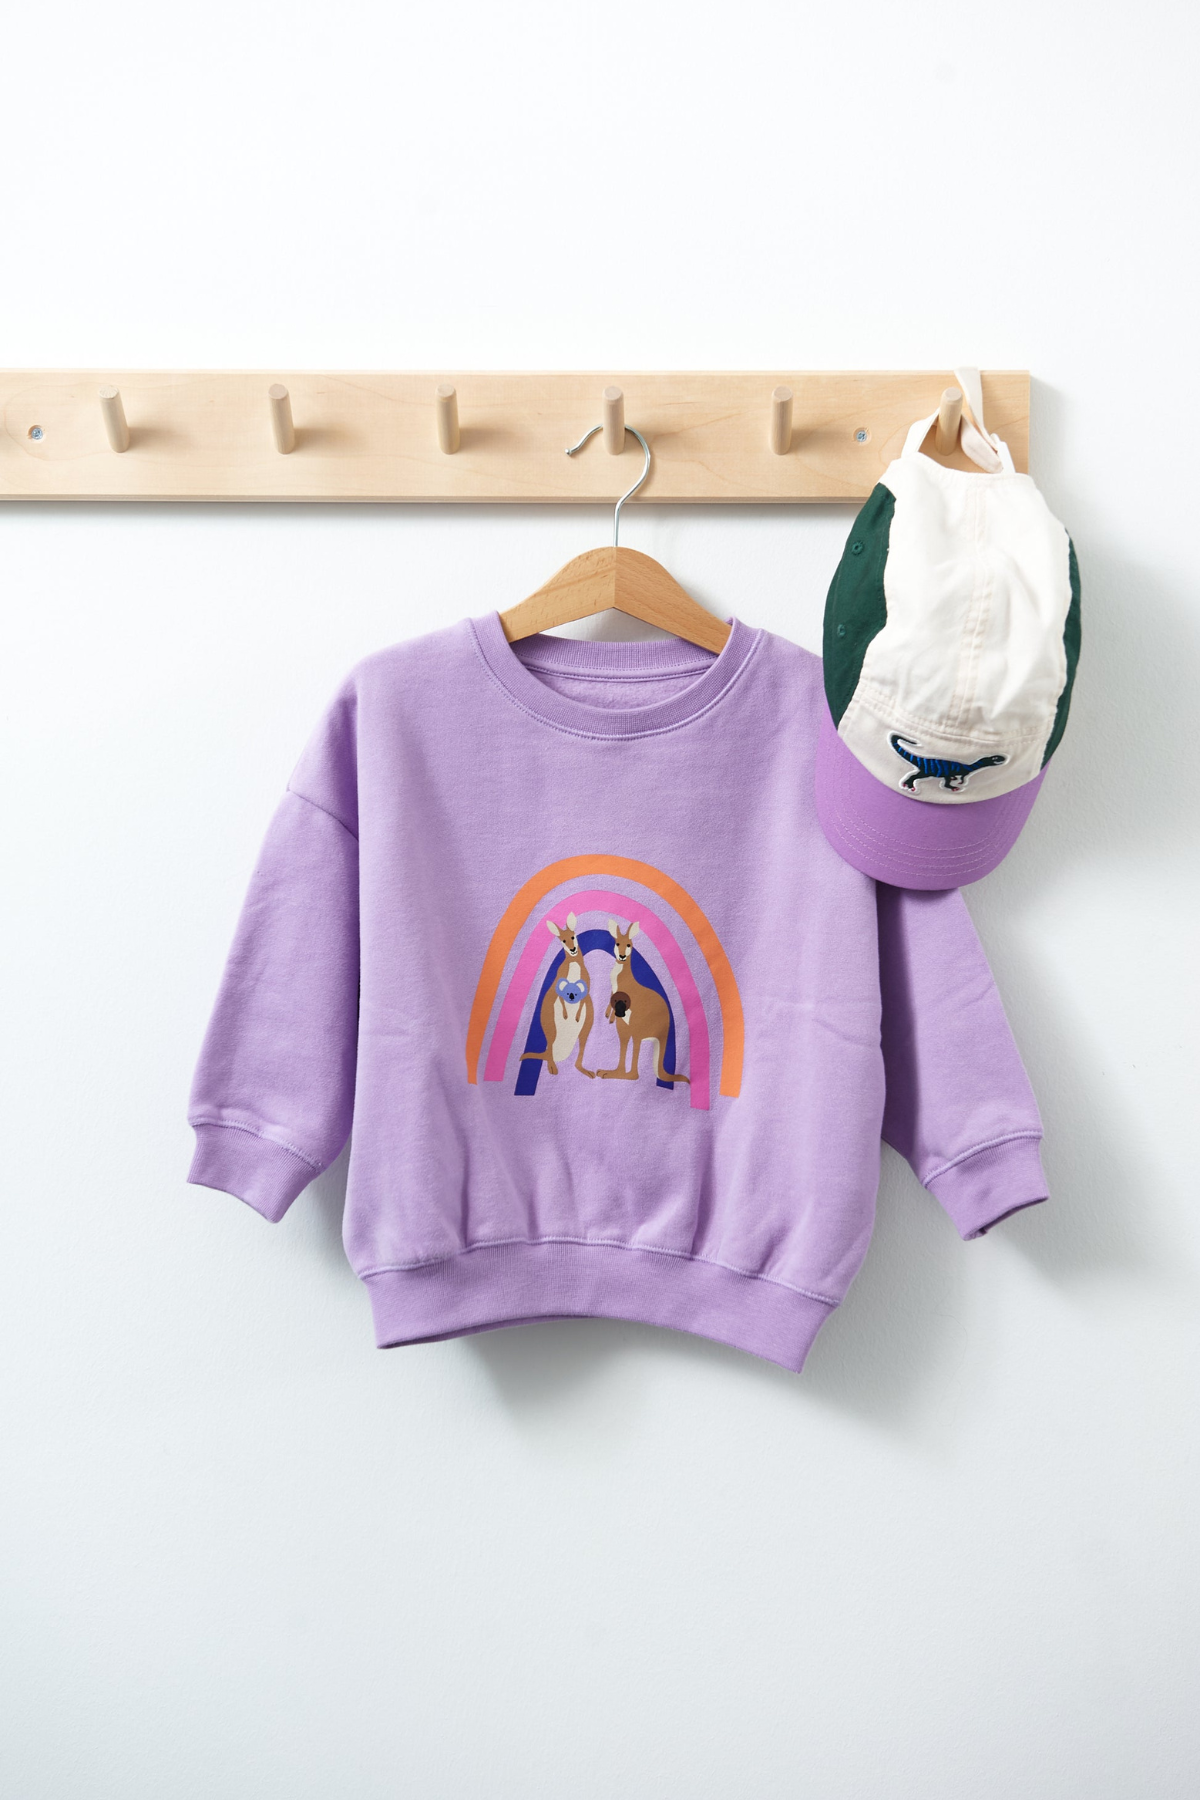 Sweatshirt “Regenbogenfamilie”